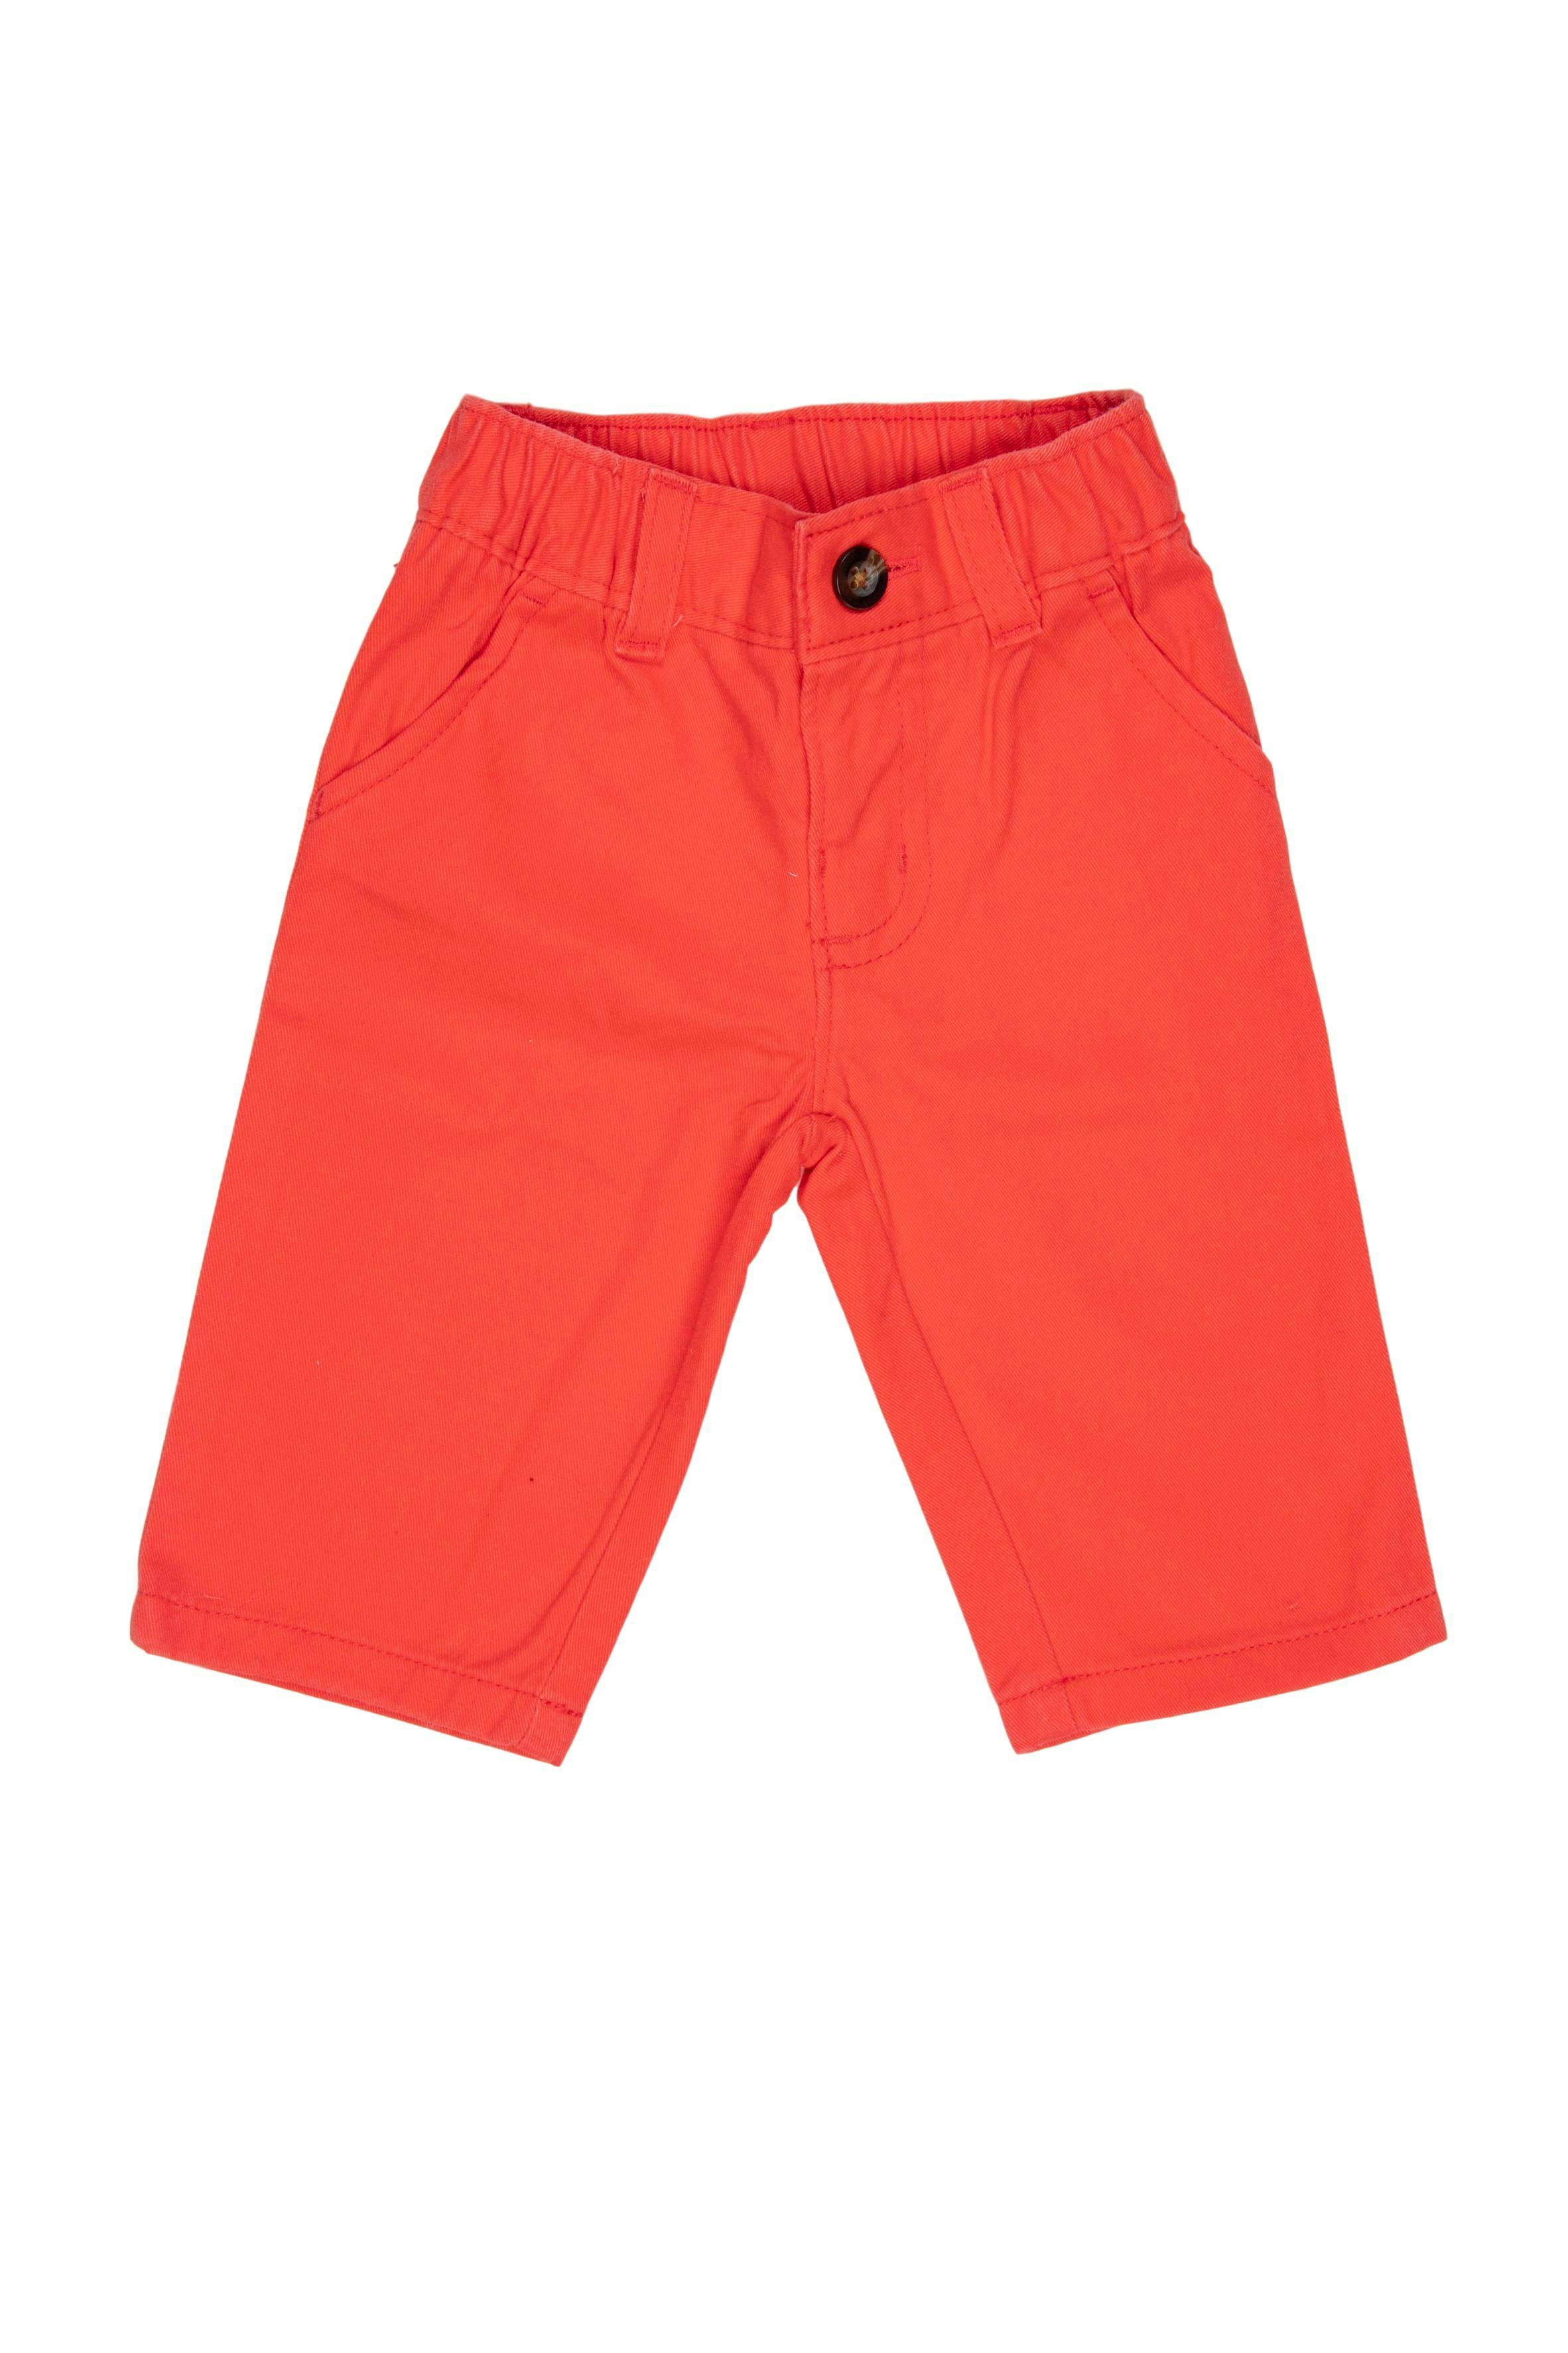 Pantalon rojo 100% algodón, elástico en la cintura - Carter's